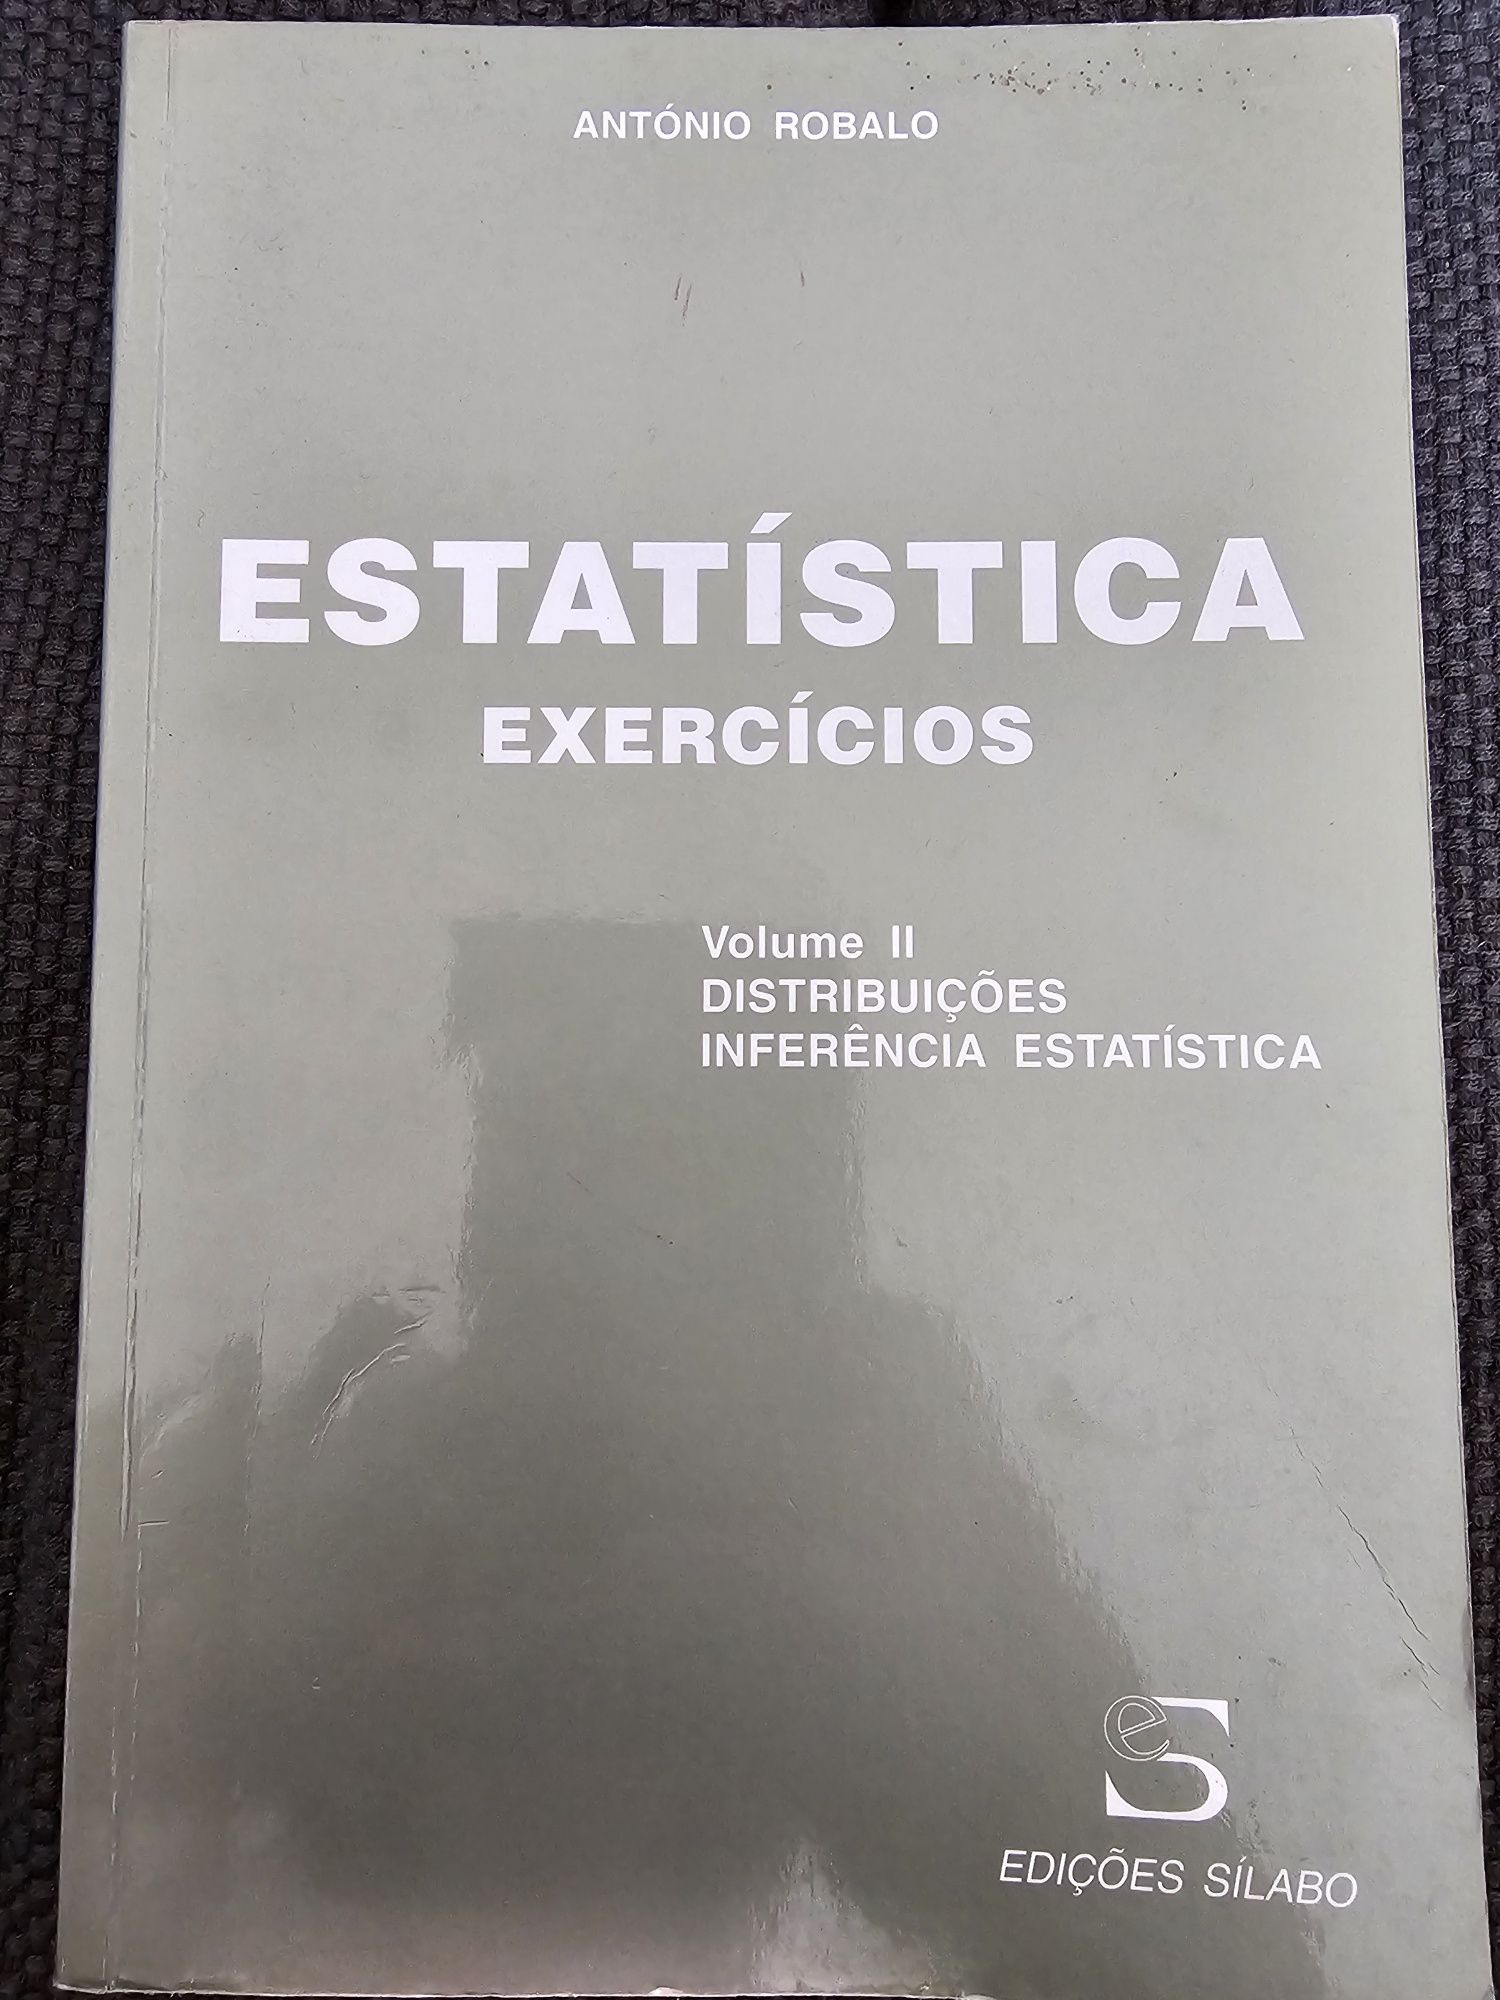 Estatística exercício volume II (António Robalo)